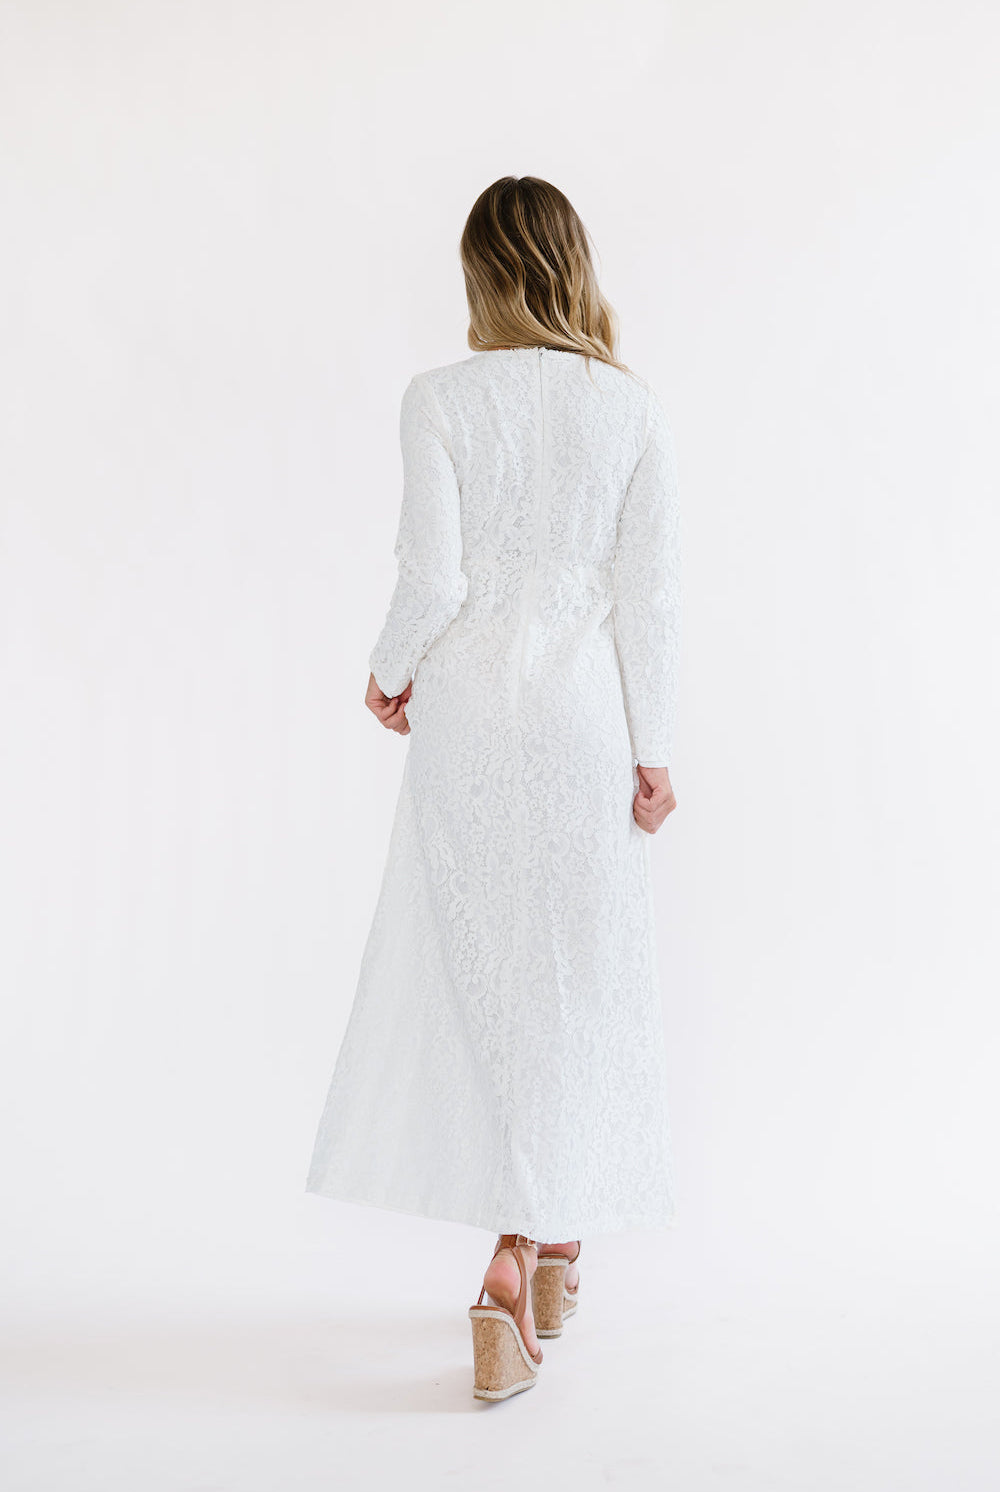 White church dress